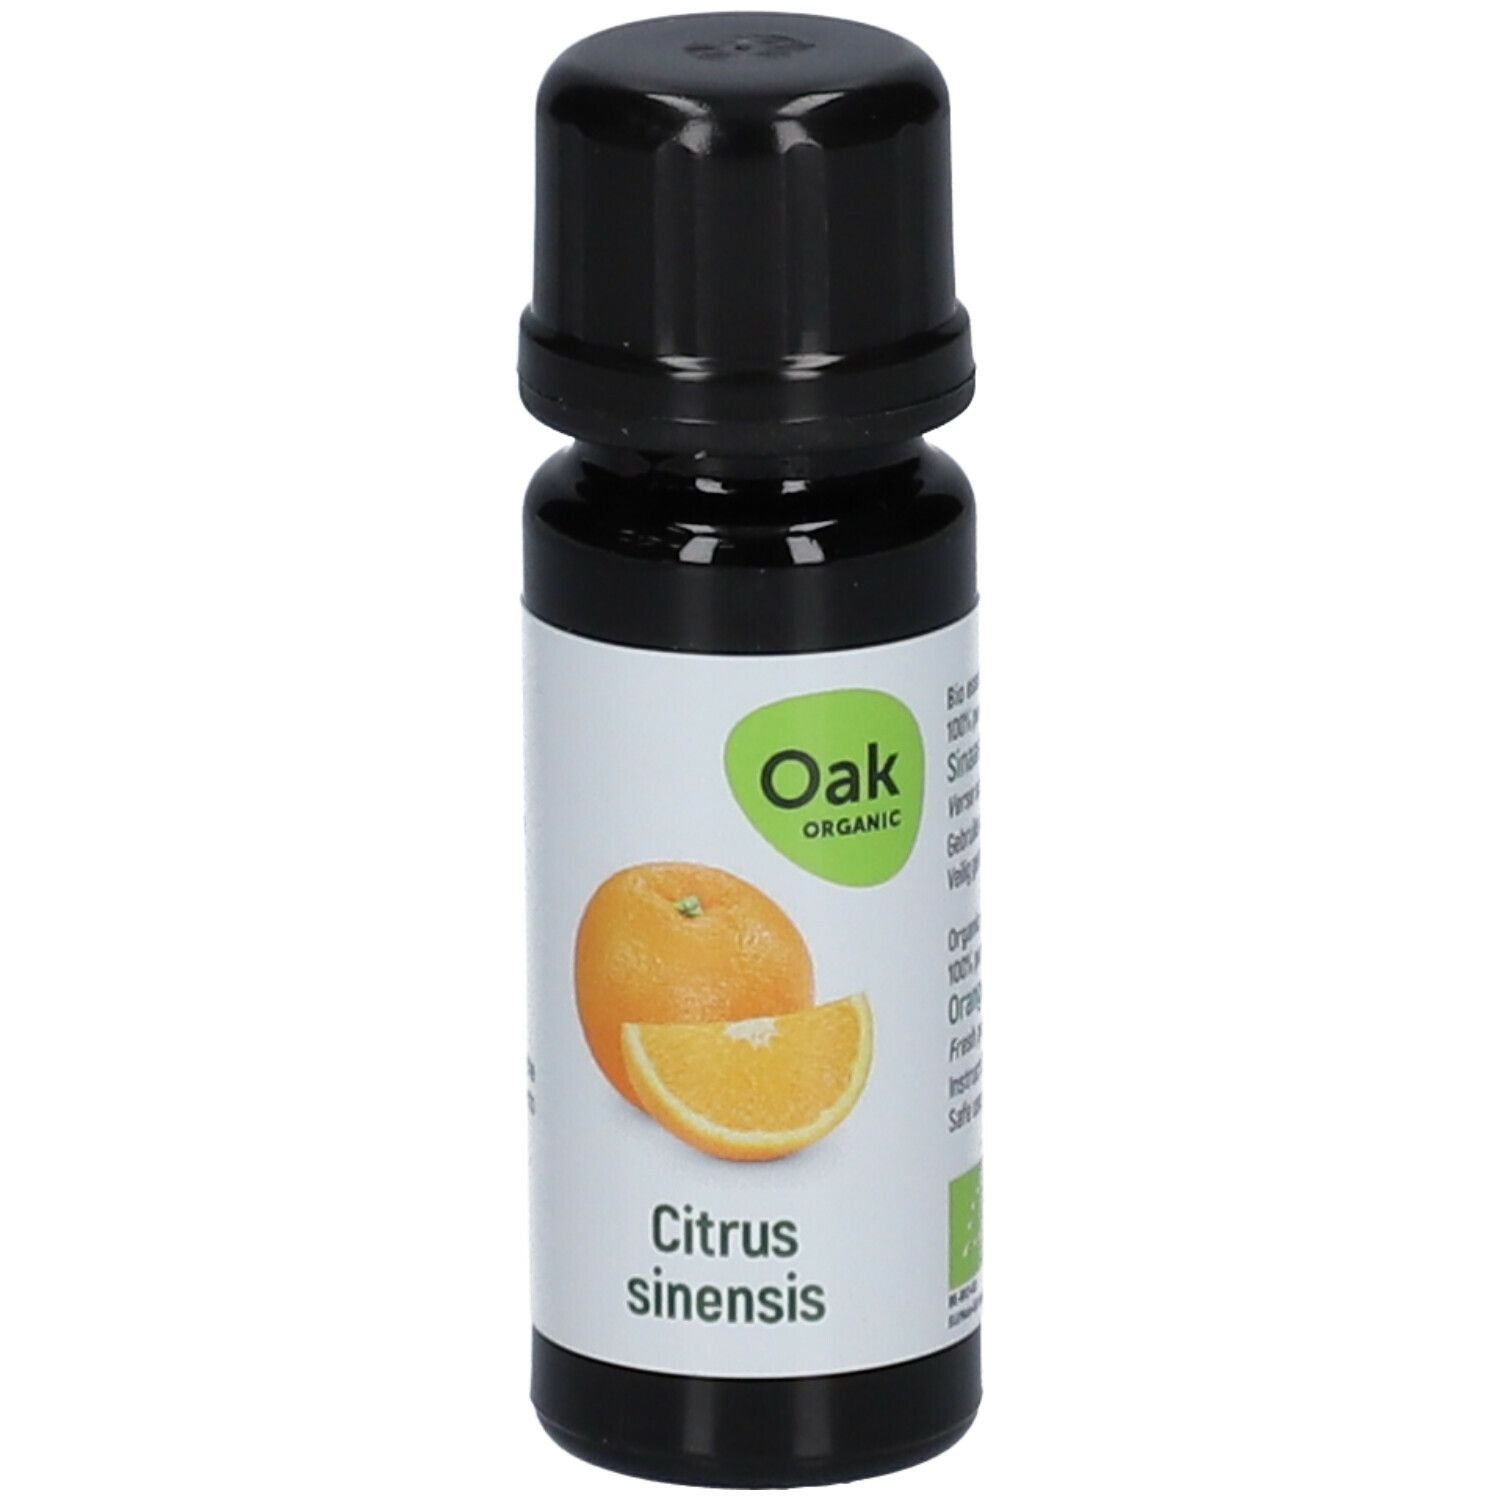 Oak Citrus sinensis